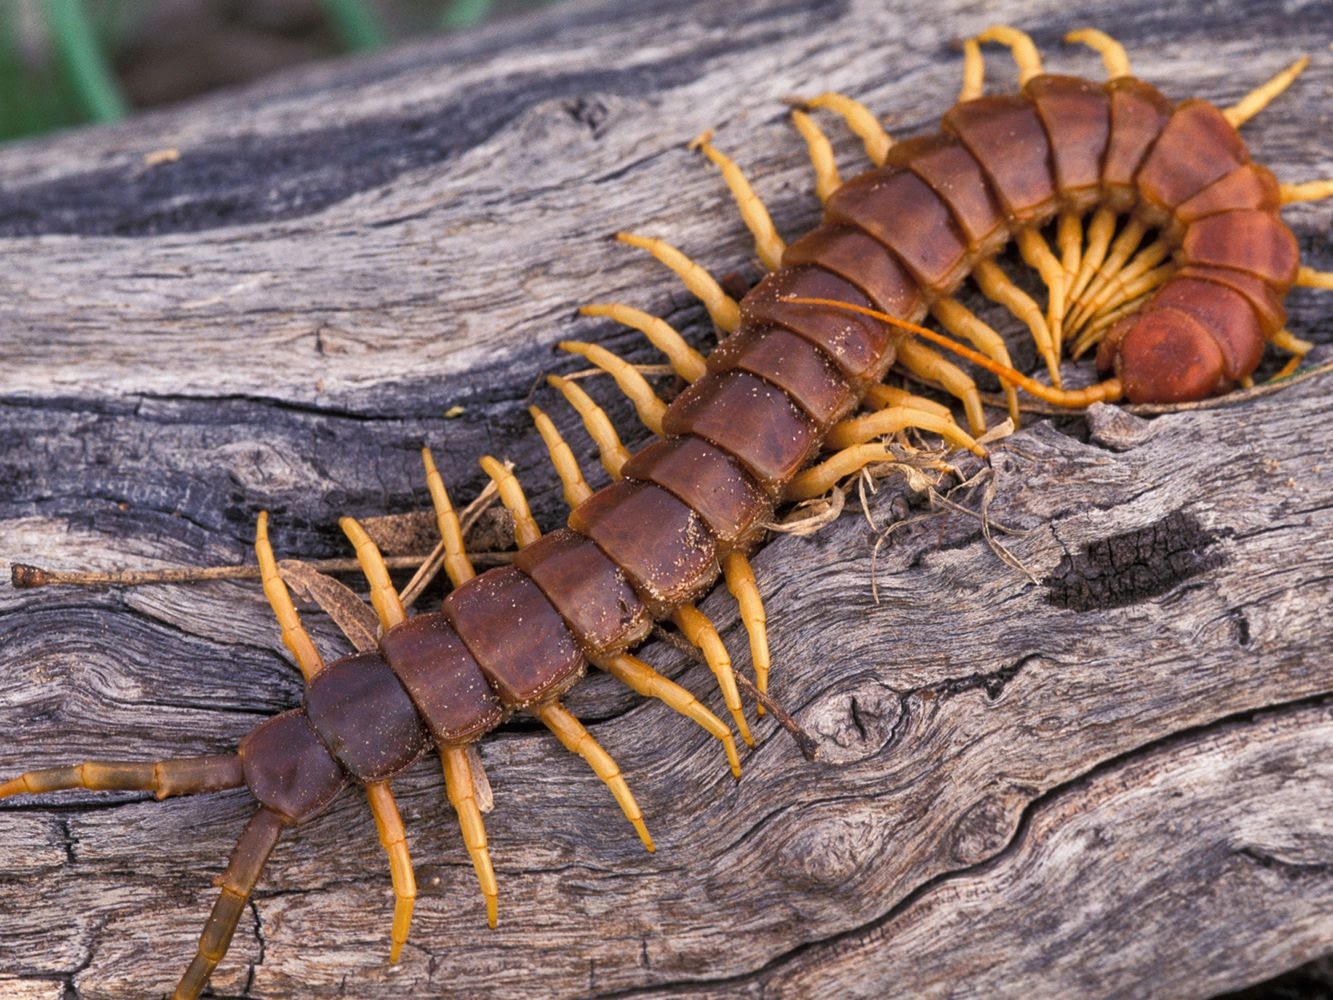 Large Centipede on wood log